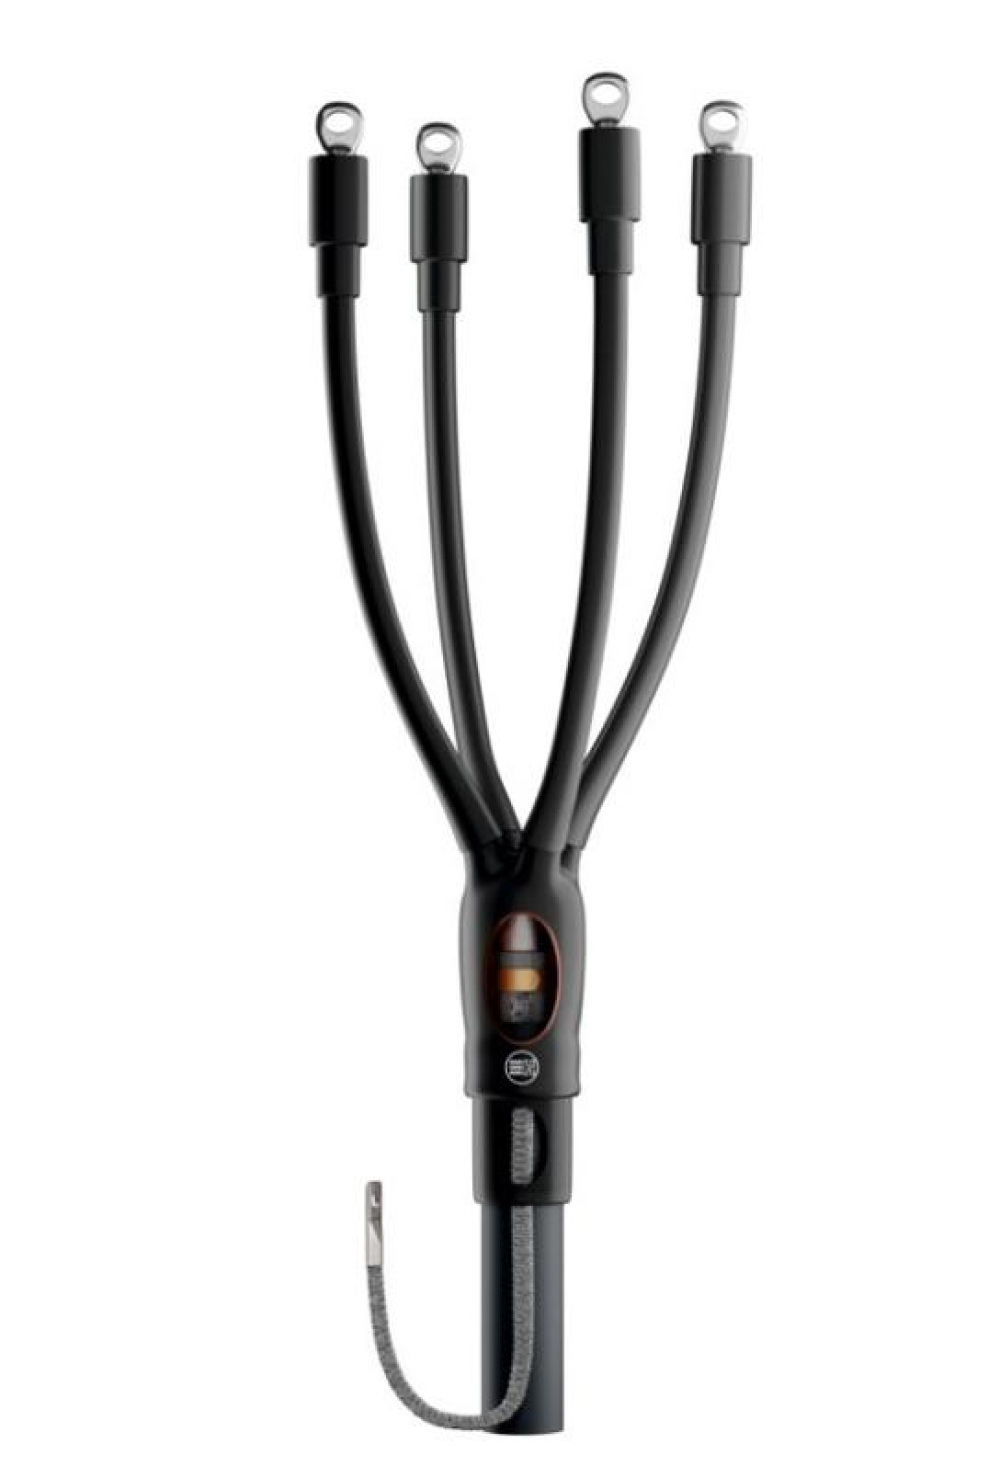 Муфта кабельная НИЛЕД HT2-01 4х150-240 мм2 концевая, количество жил - 4, сечение жил 150-240 мм2, напряжение 1кВ, с болтовыми наконечниками без брони для кабелей с пластмассовой изоляцией